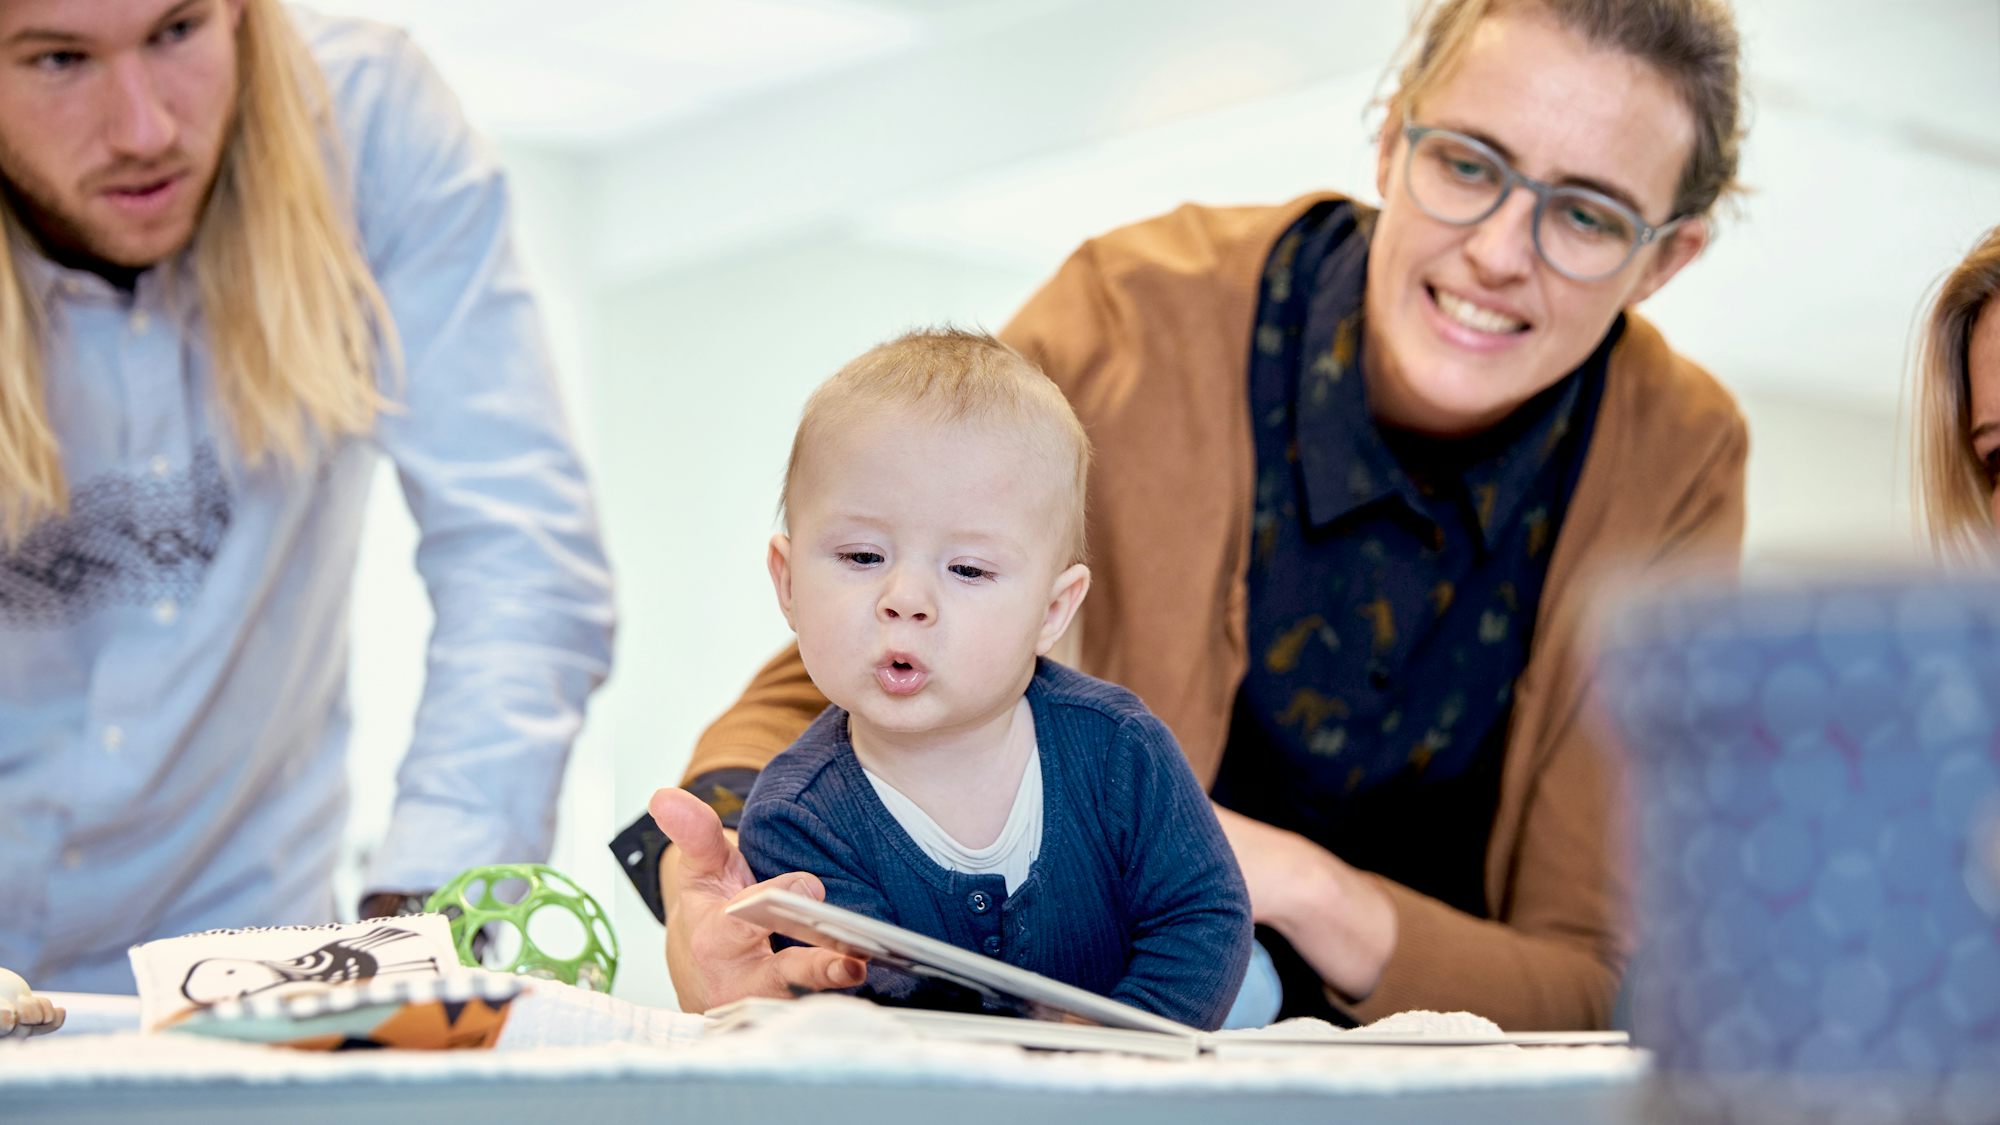 Enthousiaste reacties van baby’s laten zich moeilijker verzamelen. Maar het beeldmateriaal uit GodivAPP  spreekt boekdelen: blije baby’s die spelenderwijs een belangrijke bijdrage aan hun eigen ontwikkeling leveren.